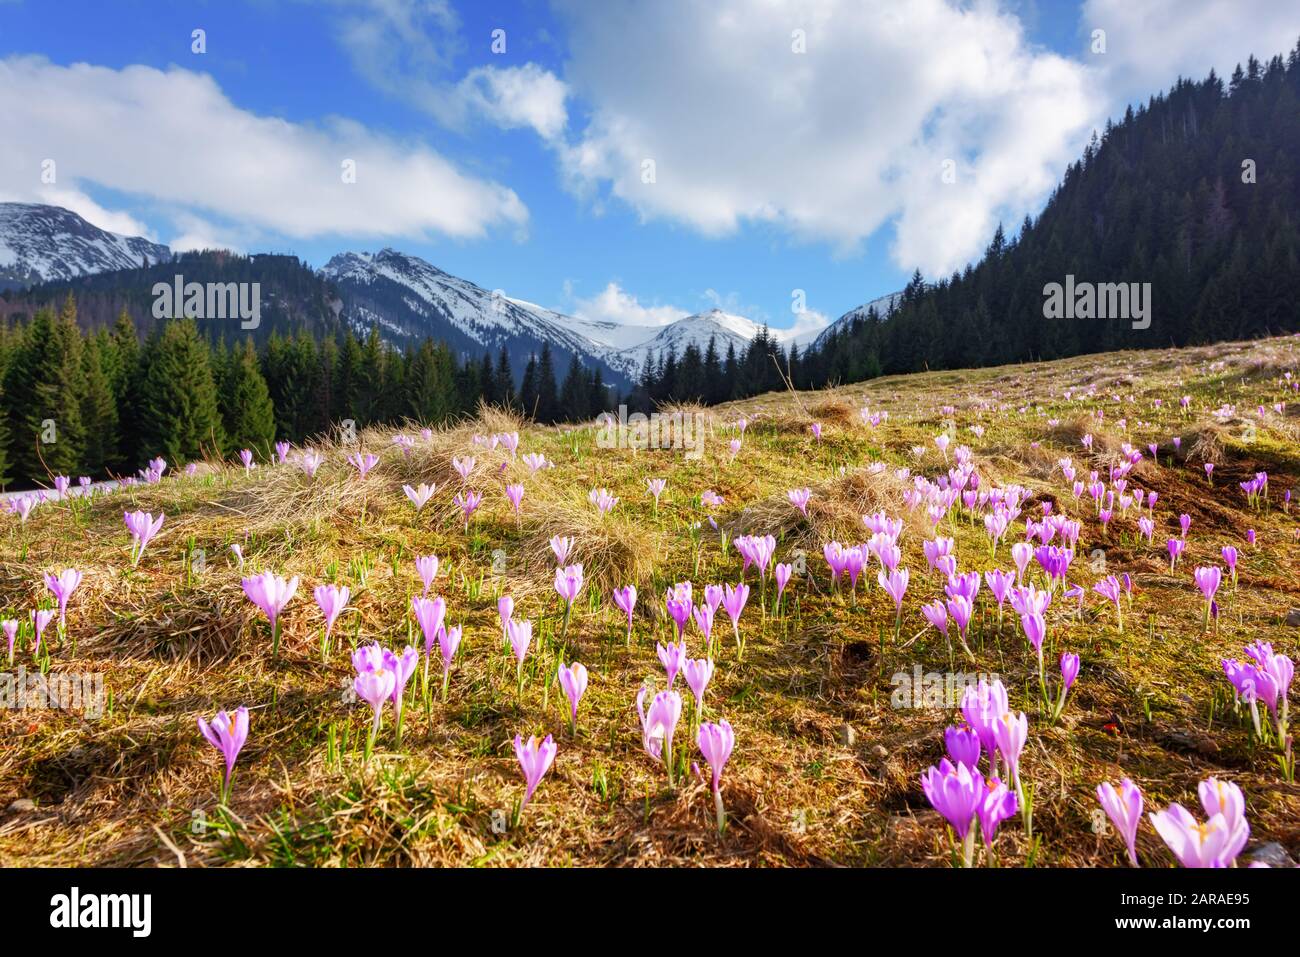 Crocus fiori sulla primavera alta Tatra montagne in Kalatowki prato, Zakopane, Polonia. Fotografia di paesaggio Foto Stock